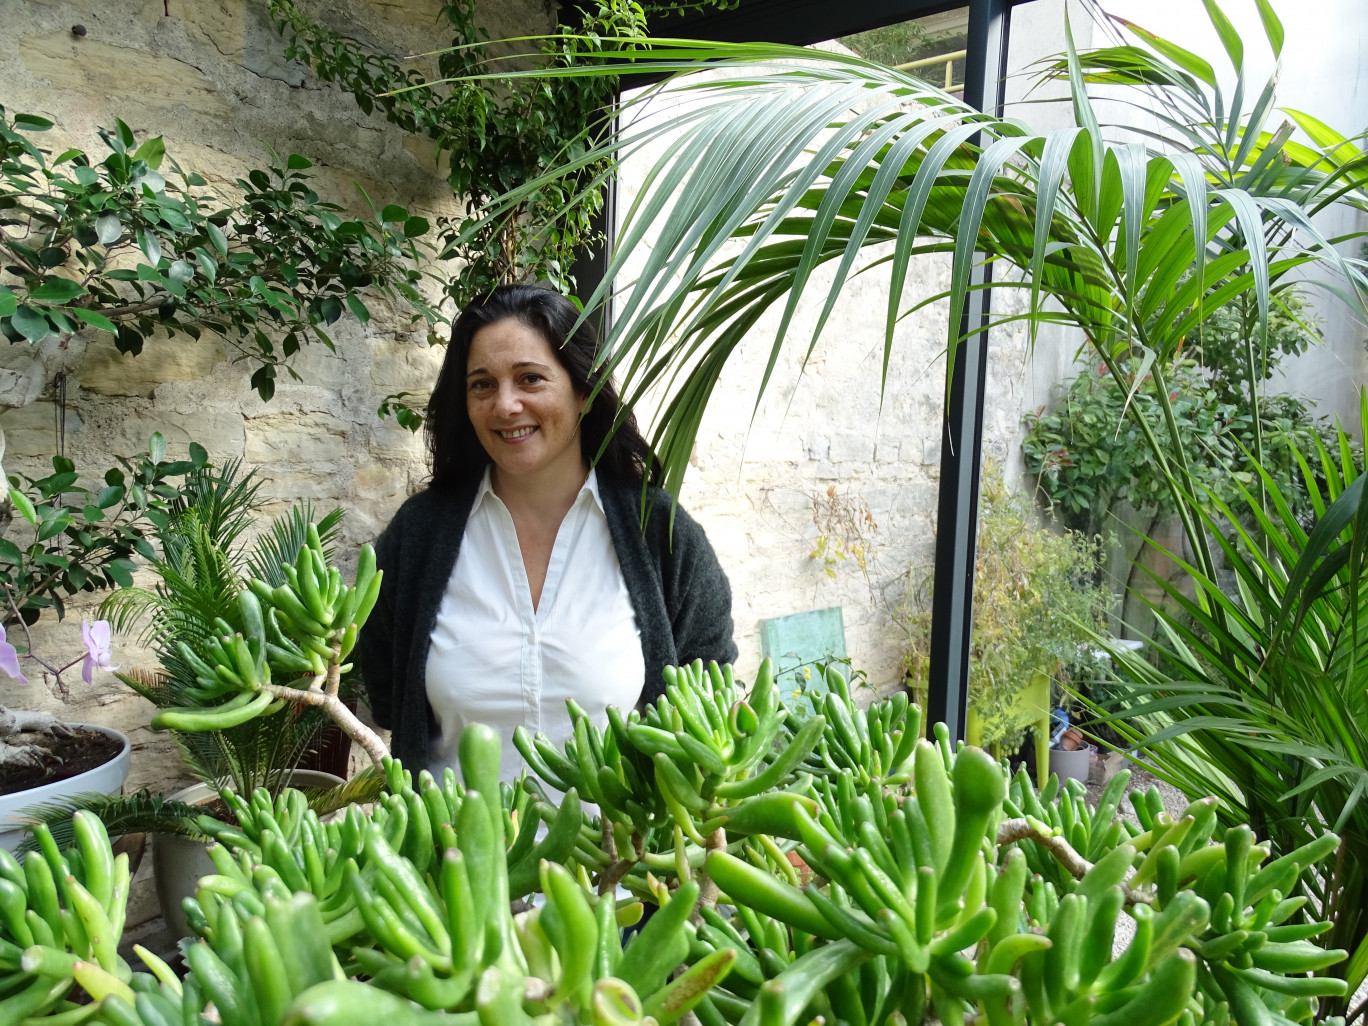 Chantale Thierry vit entourée de plantes et veut encourager leur réemploi plutôt que le gaspillage. (© Aletheia Press / Nadège Hubert)